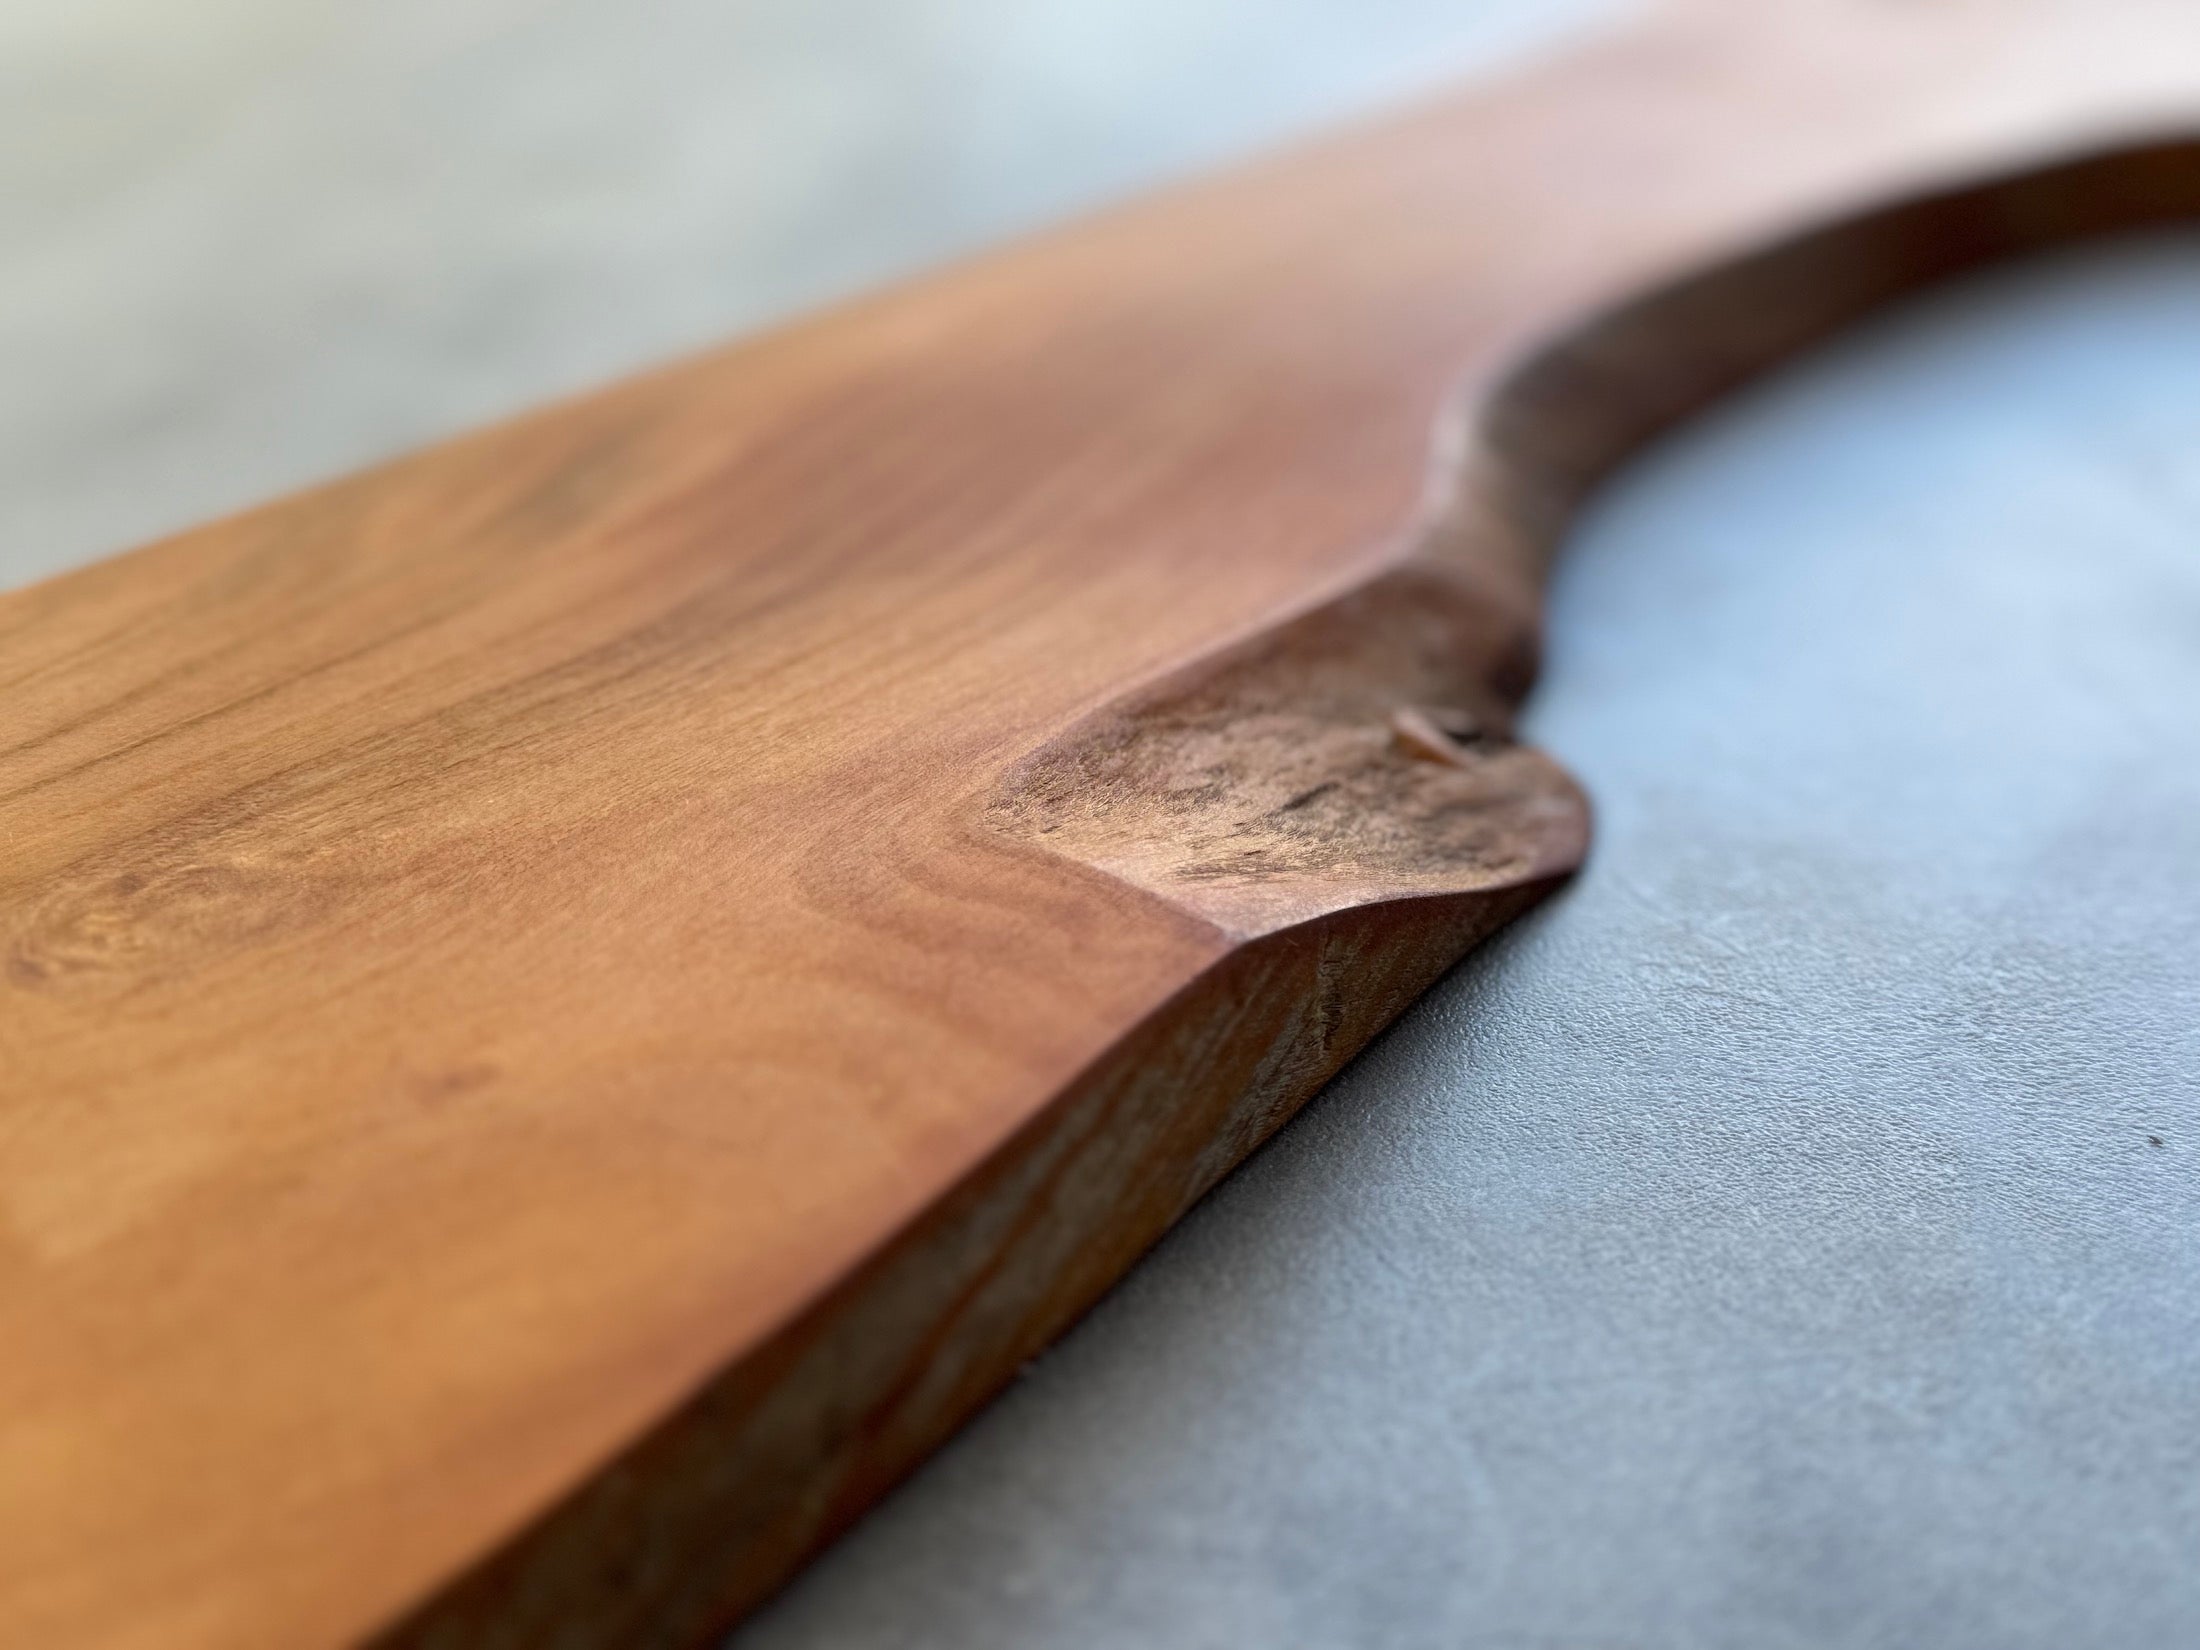 Baumkante im Detail bei einer Messerleiste von haltholz.